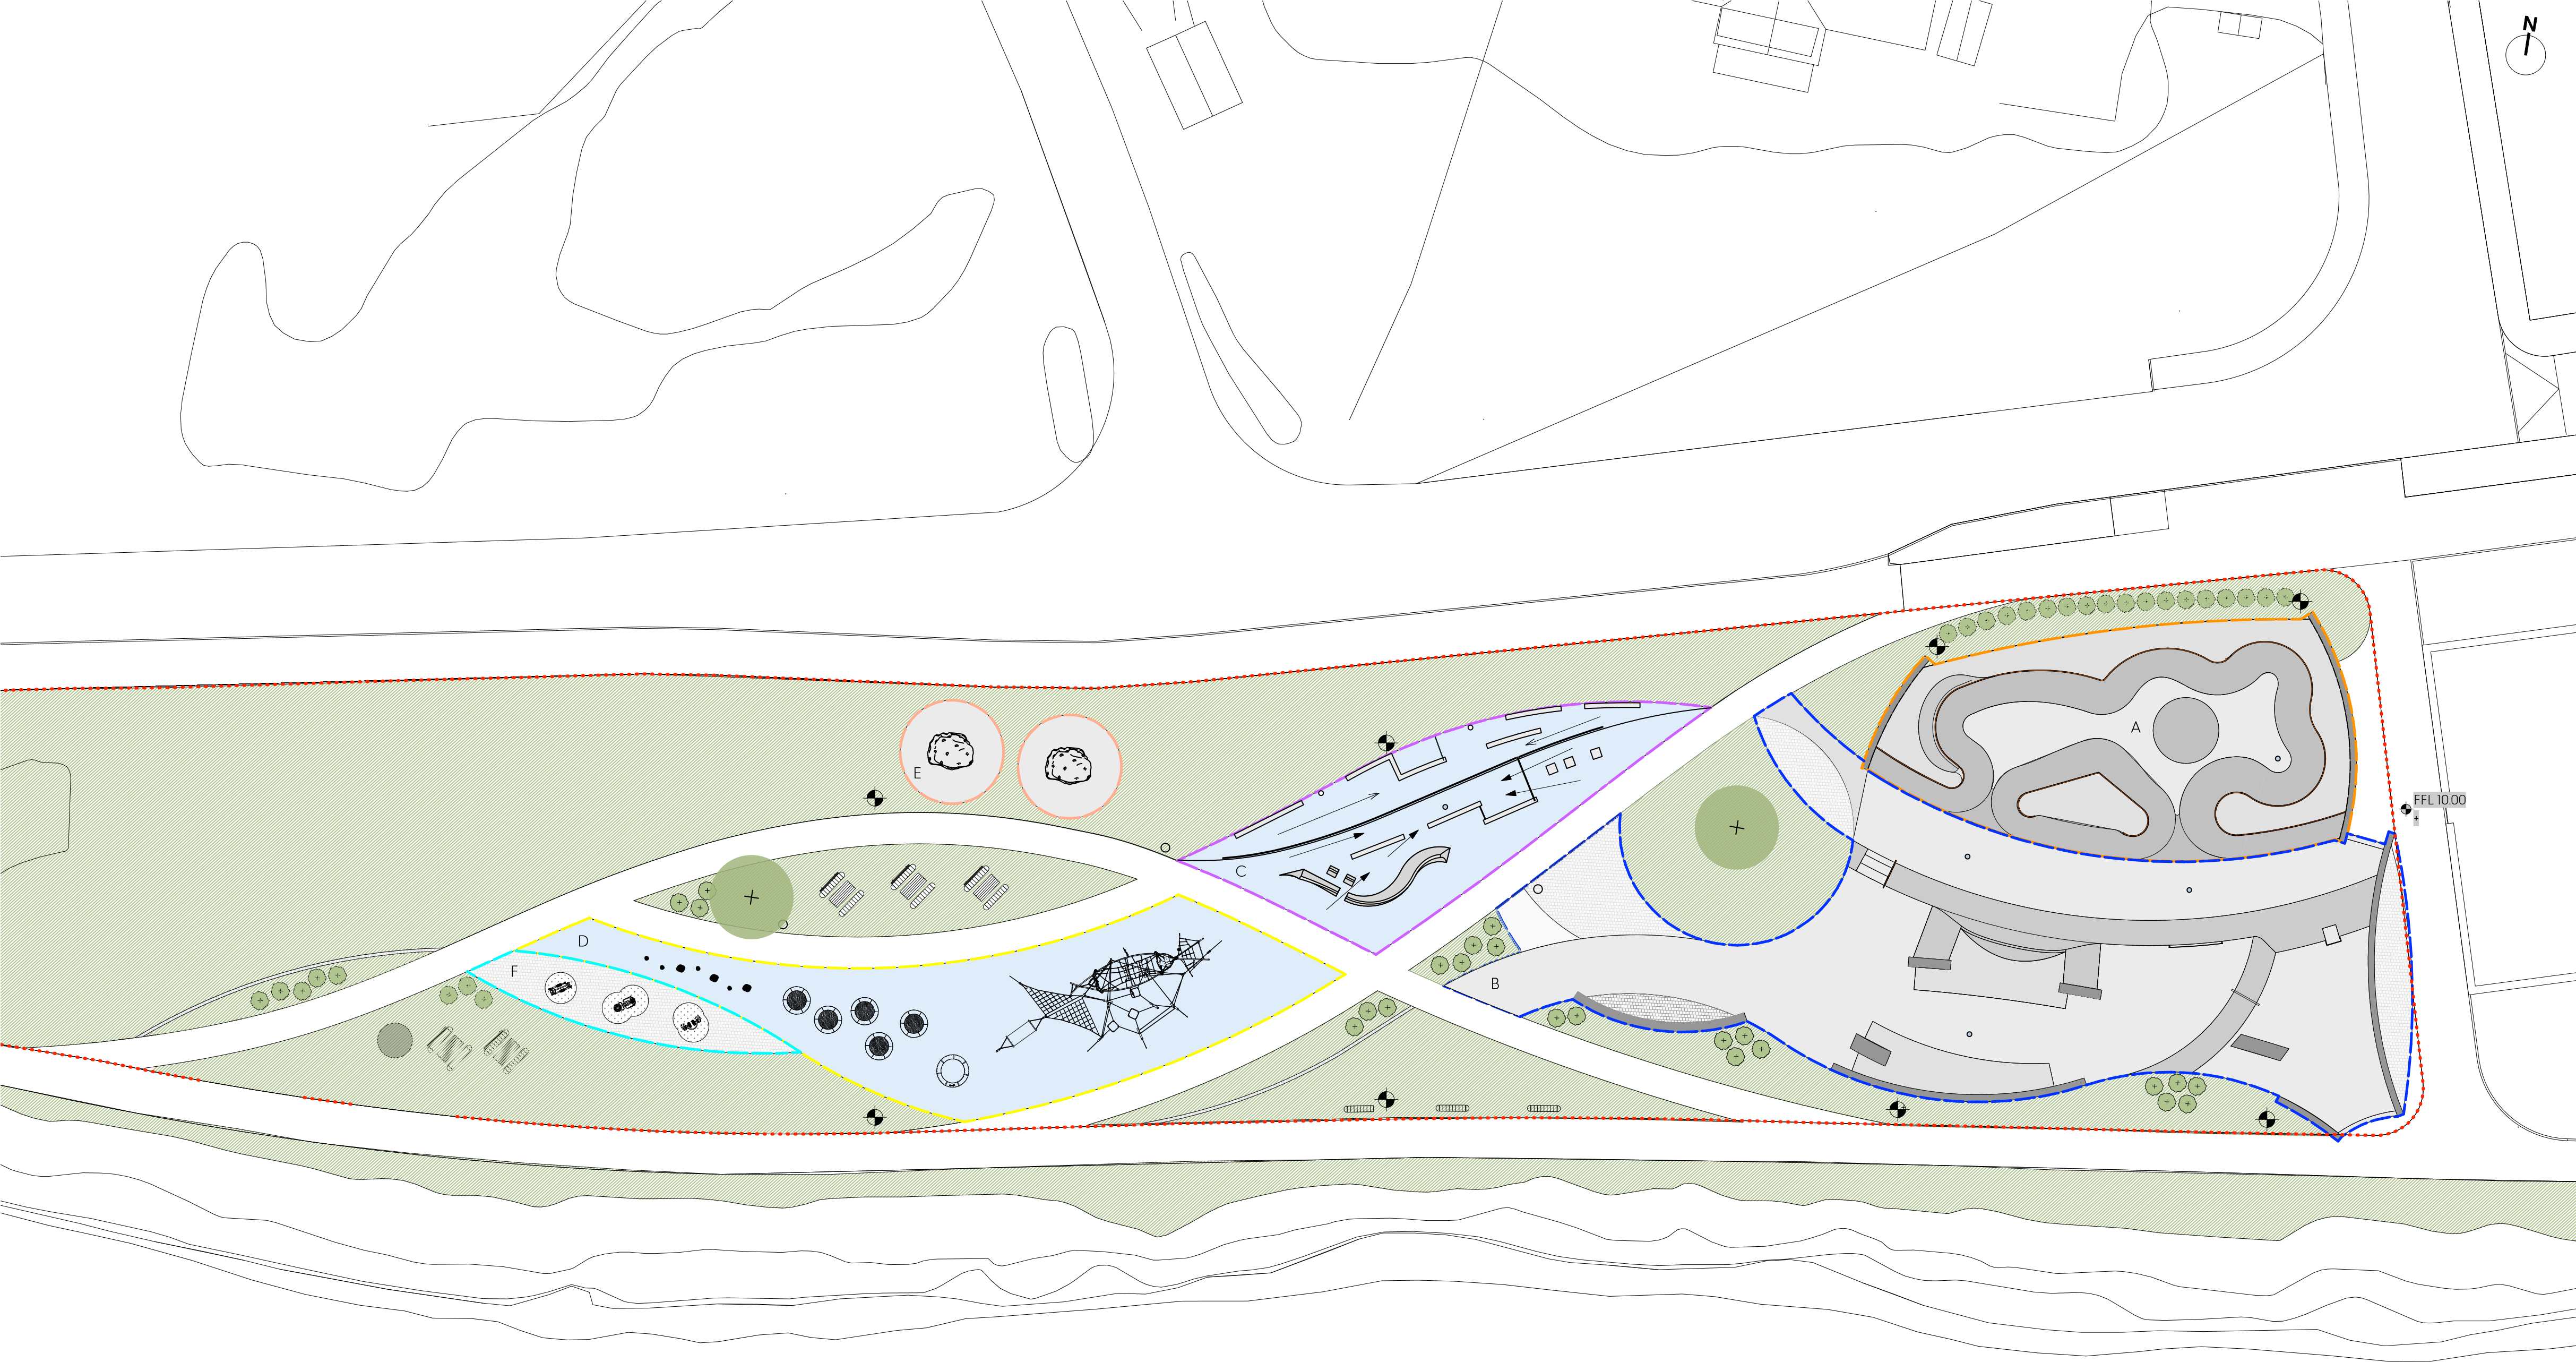 Oversiktskart over Strandpromenaden i Kongsvinger